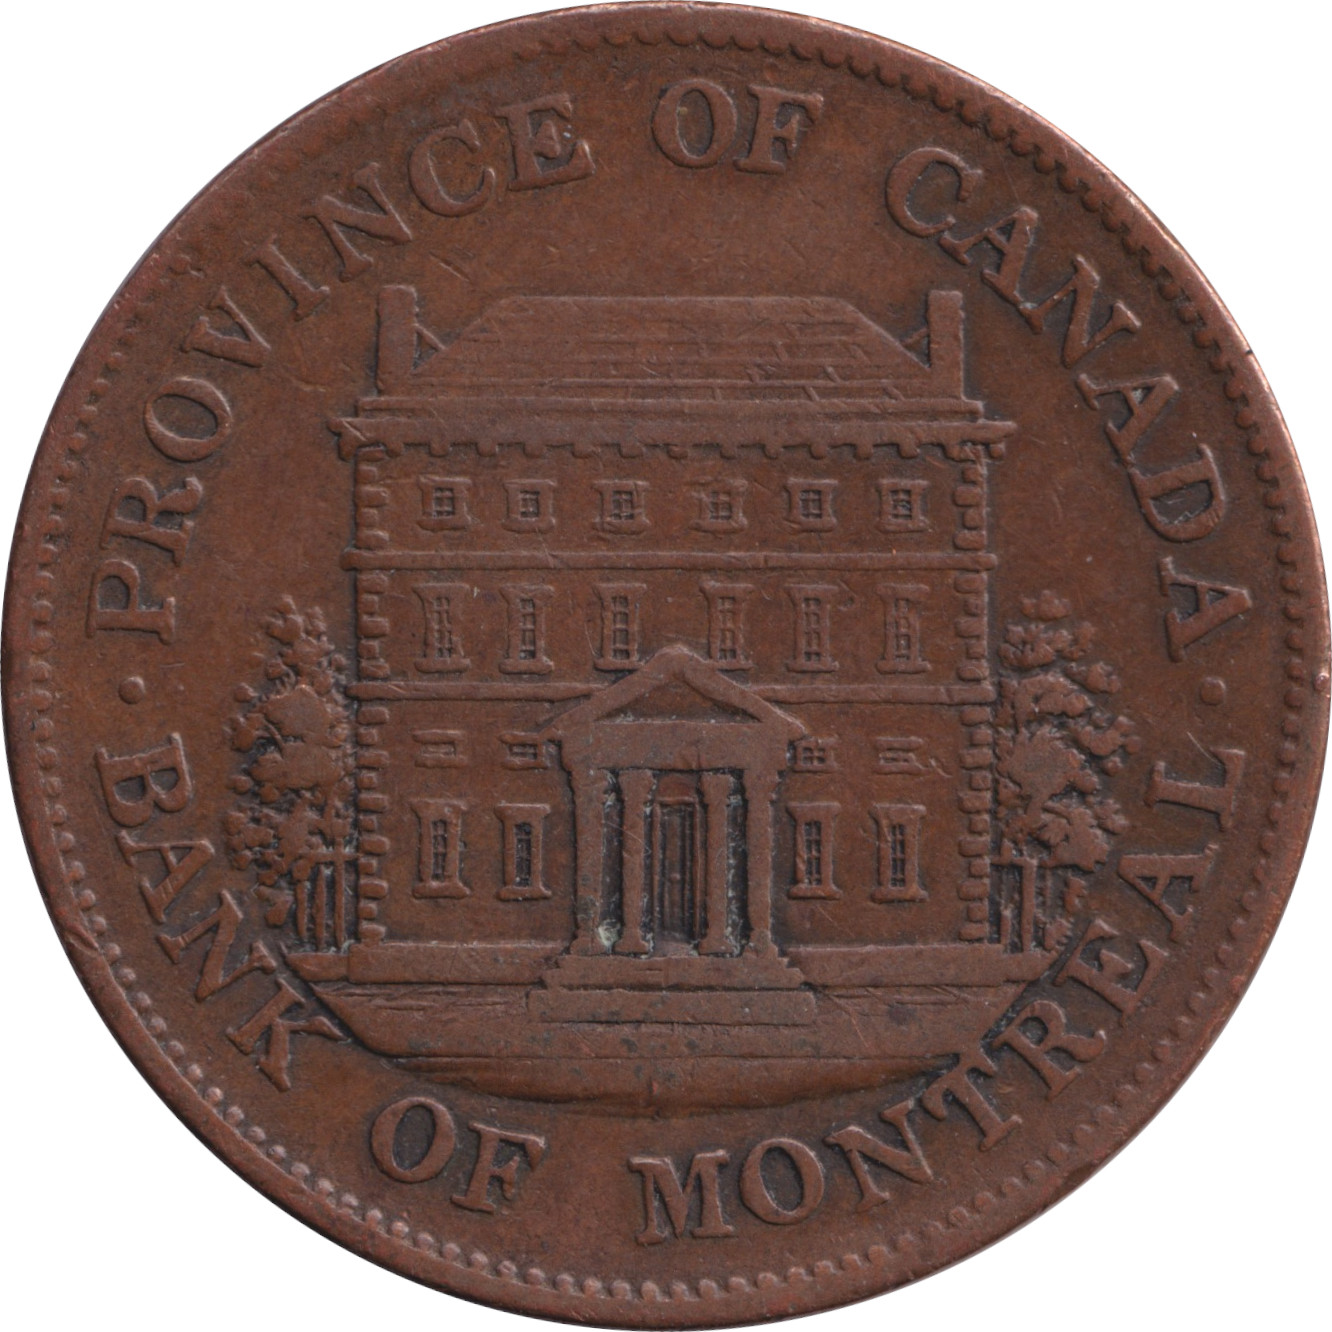 1/2 penny - Banque de Montréal - Front view